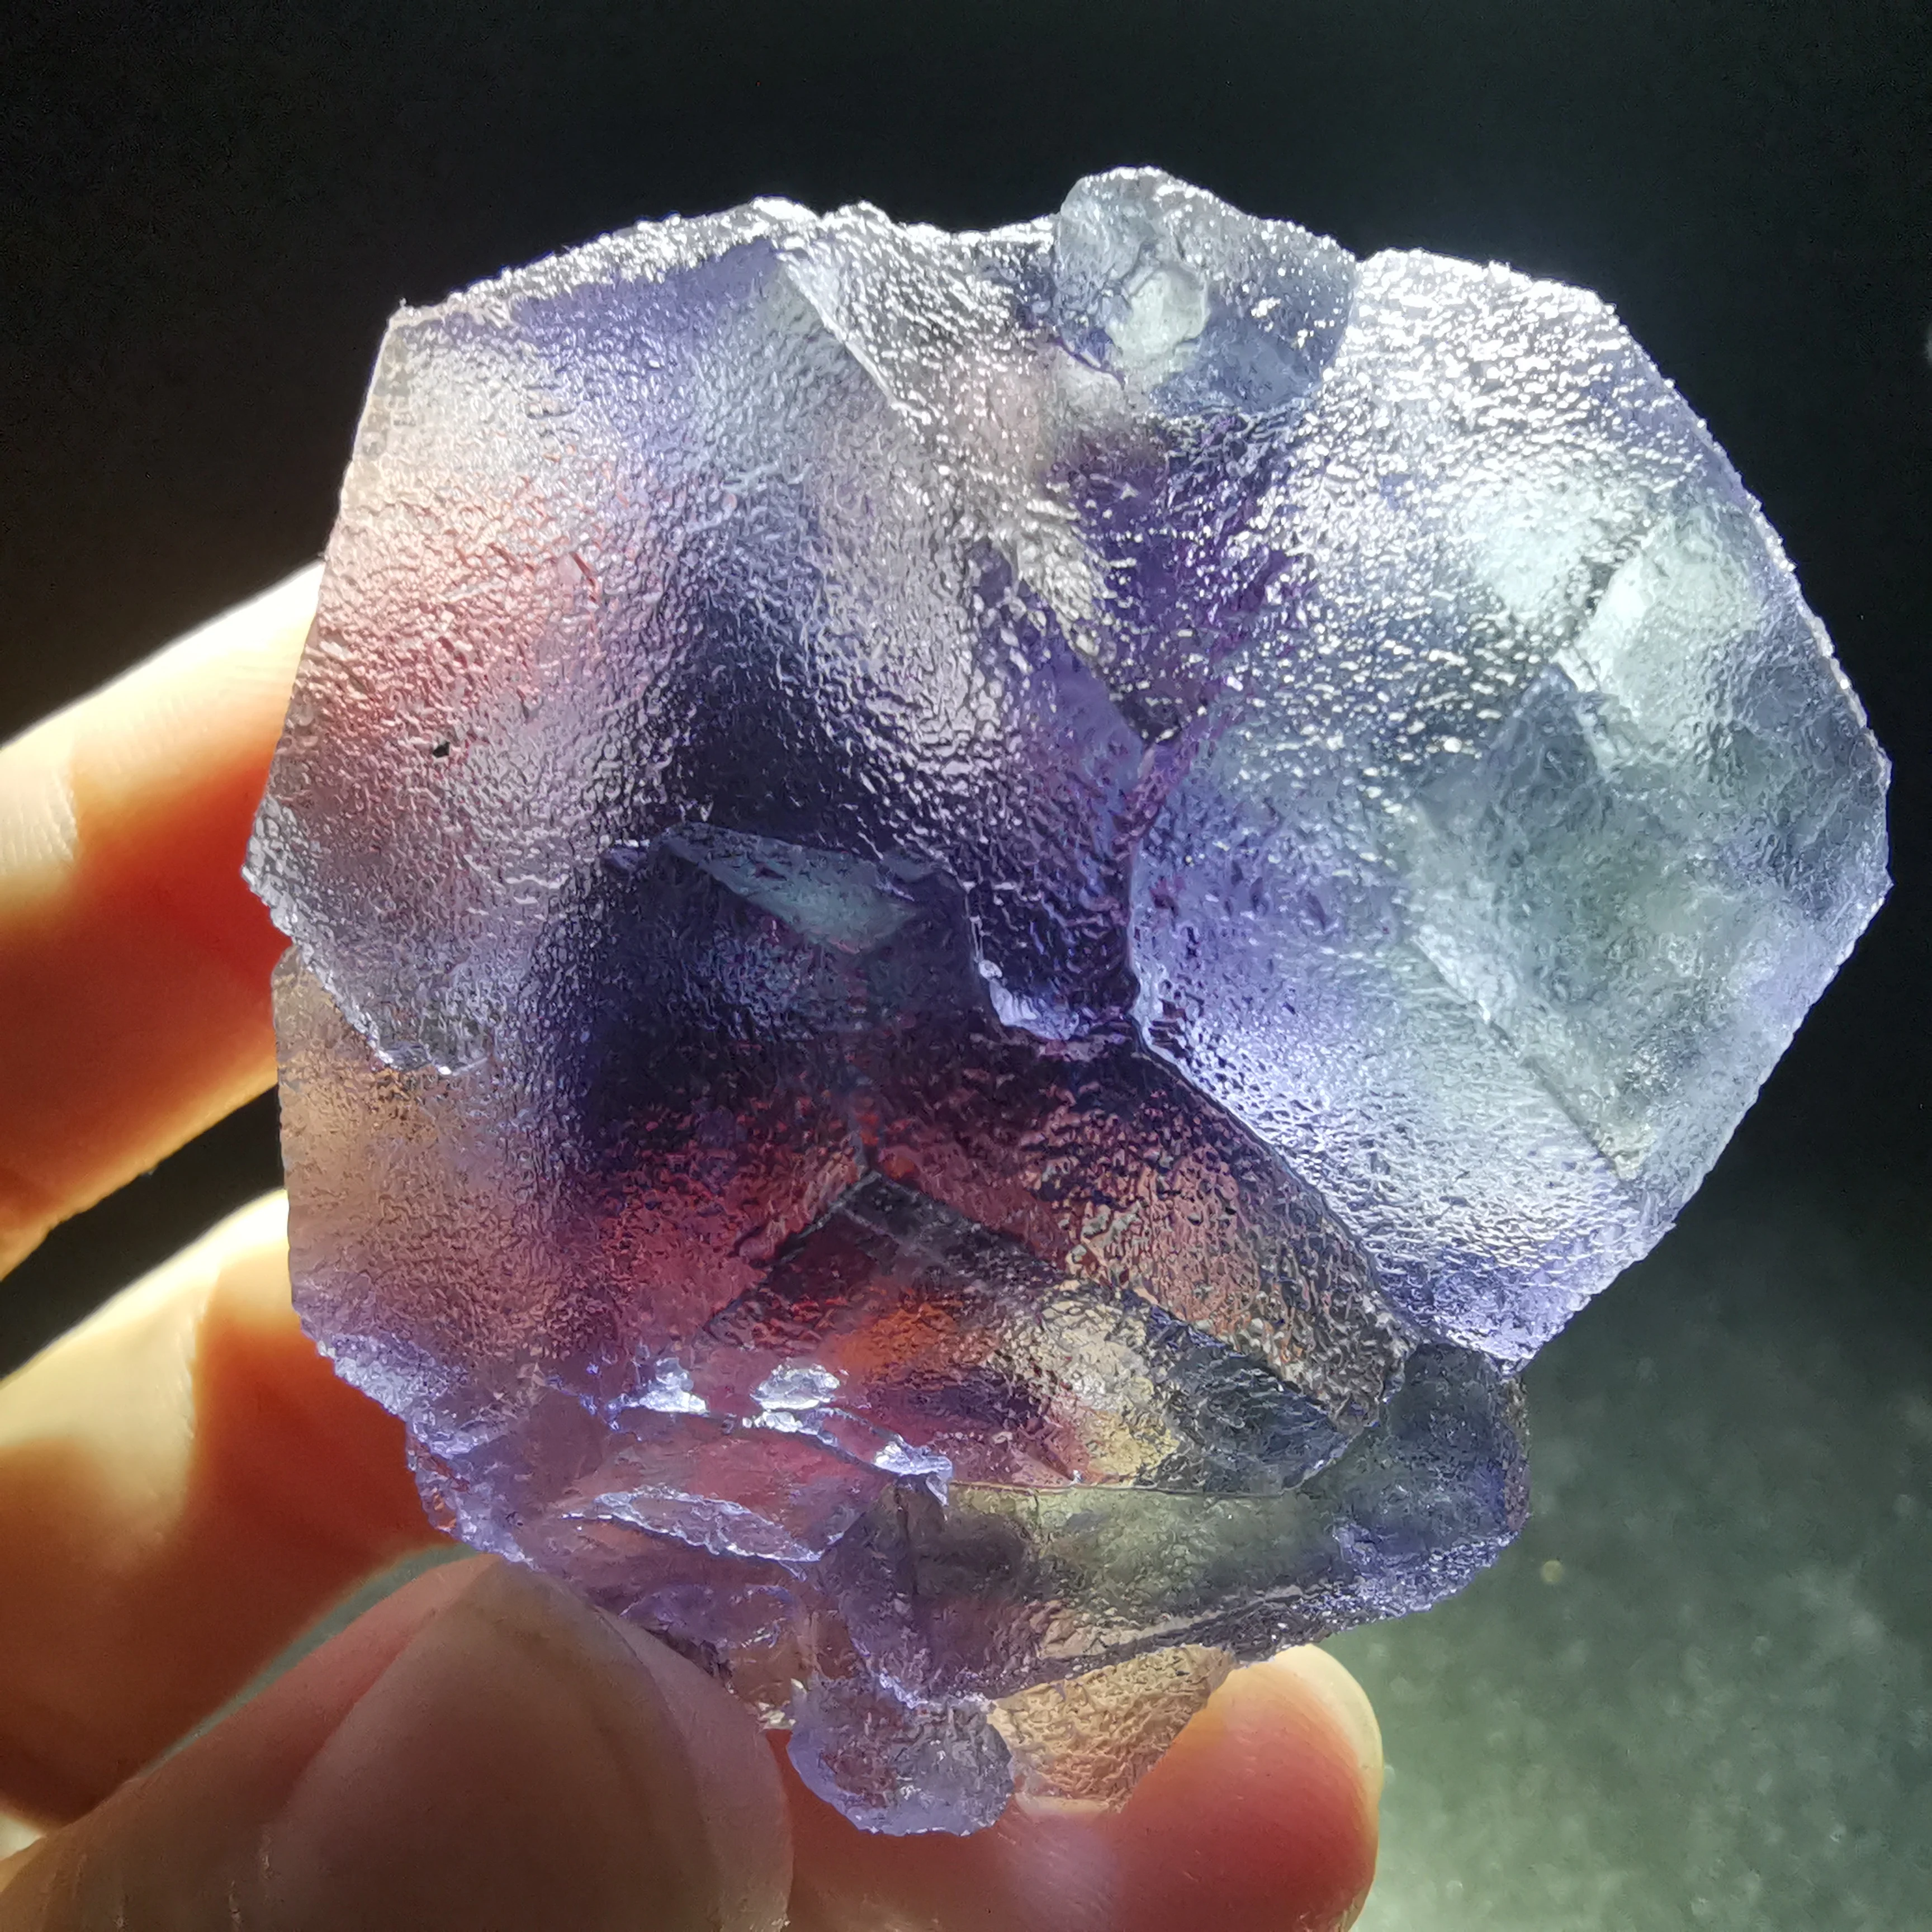 

64,5 gNatural Редкие мечта фиолетовый флюорит минеральная образец камня и с украшением в виде кристаллов лечебный Кристал, кварц камень домашнег...